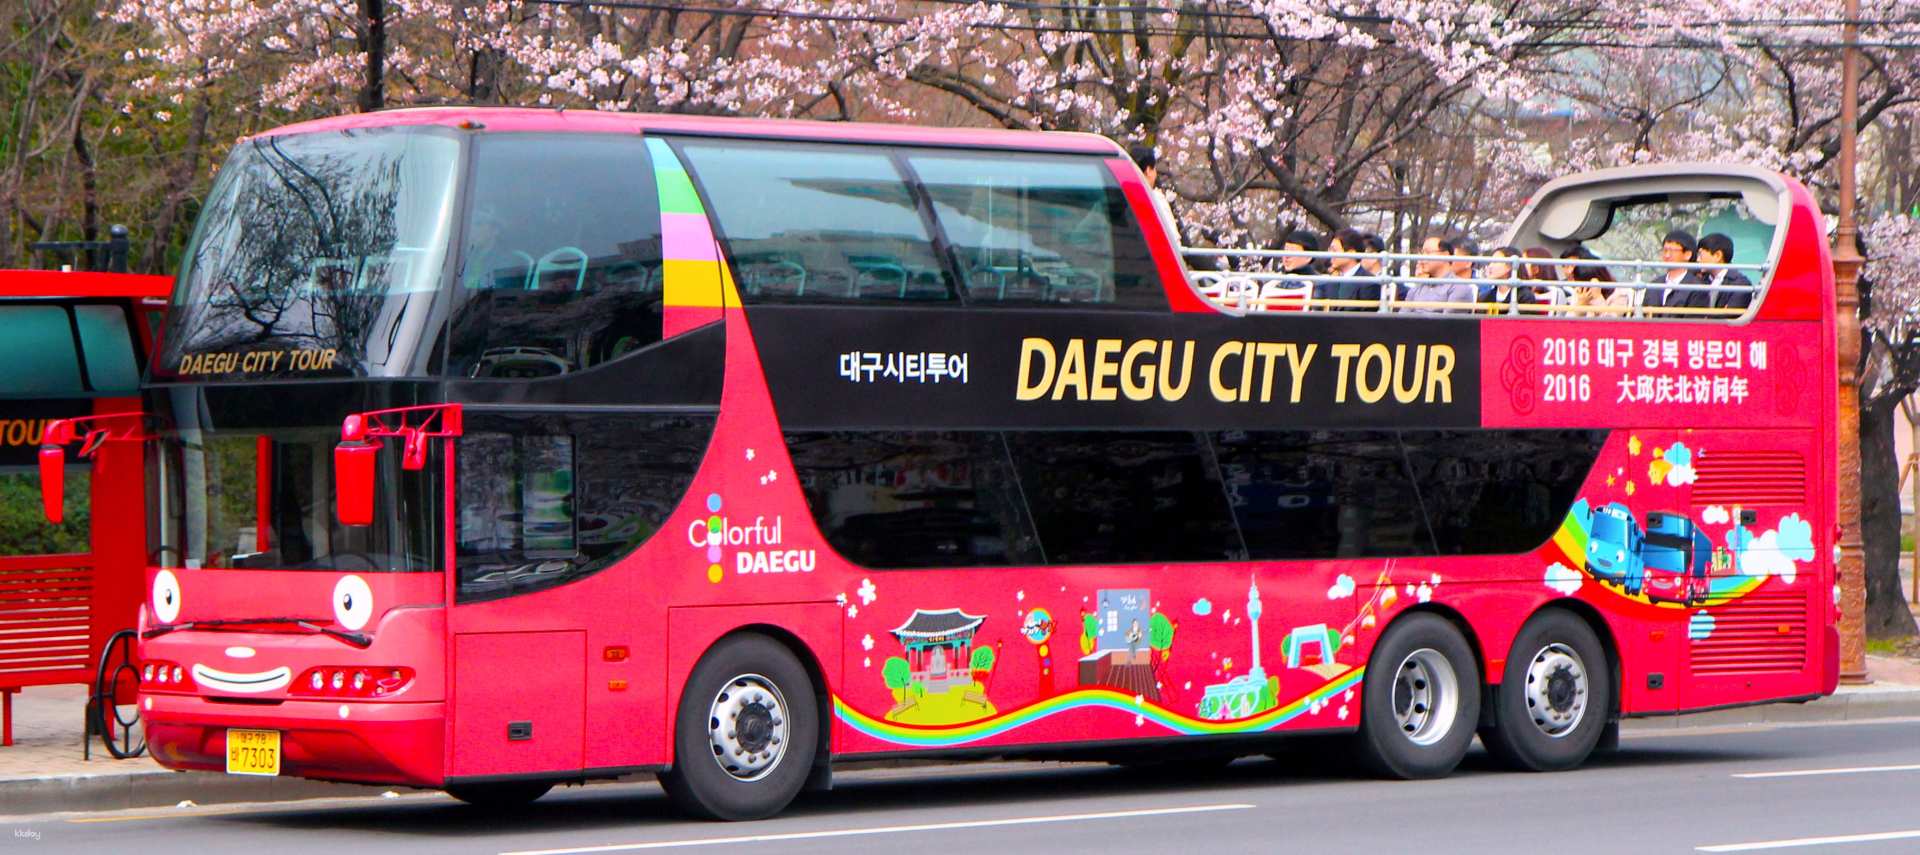 韓國-大邱走透透| 大邱城市觀光巴士一日券